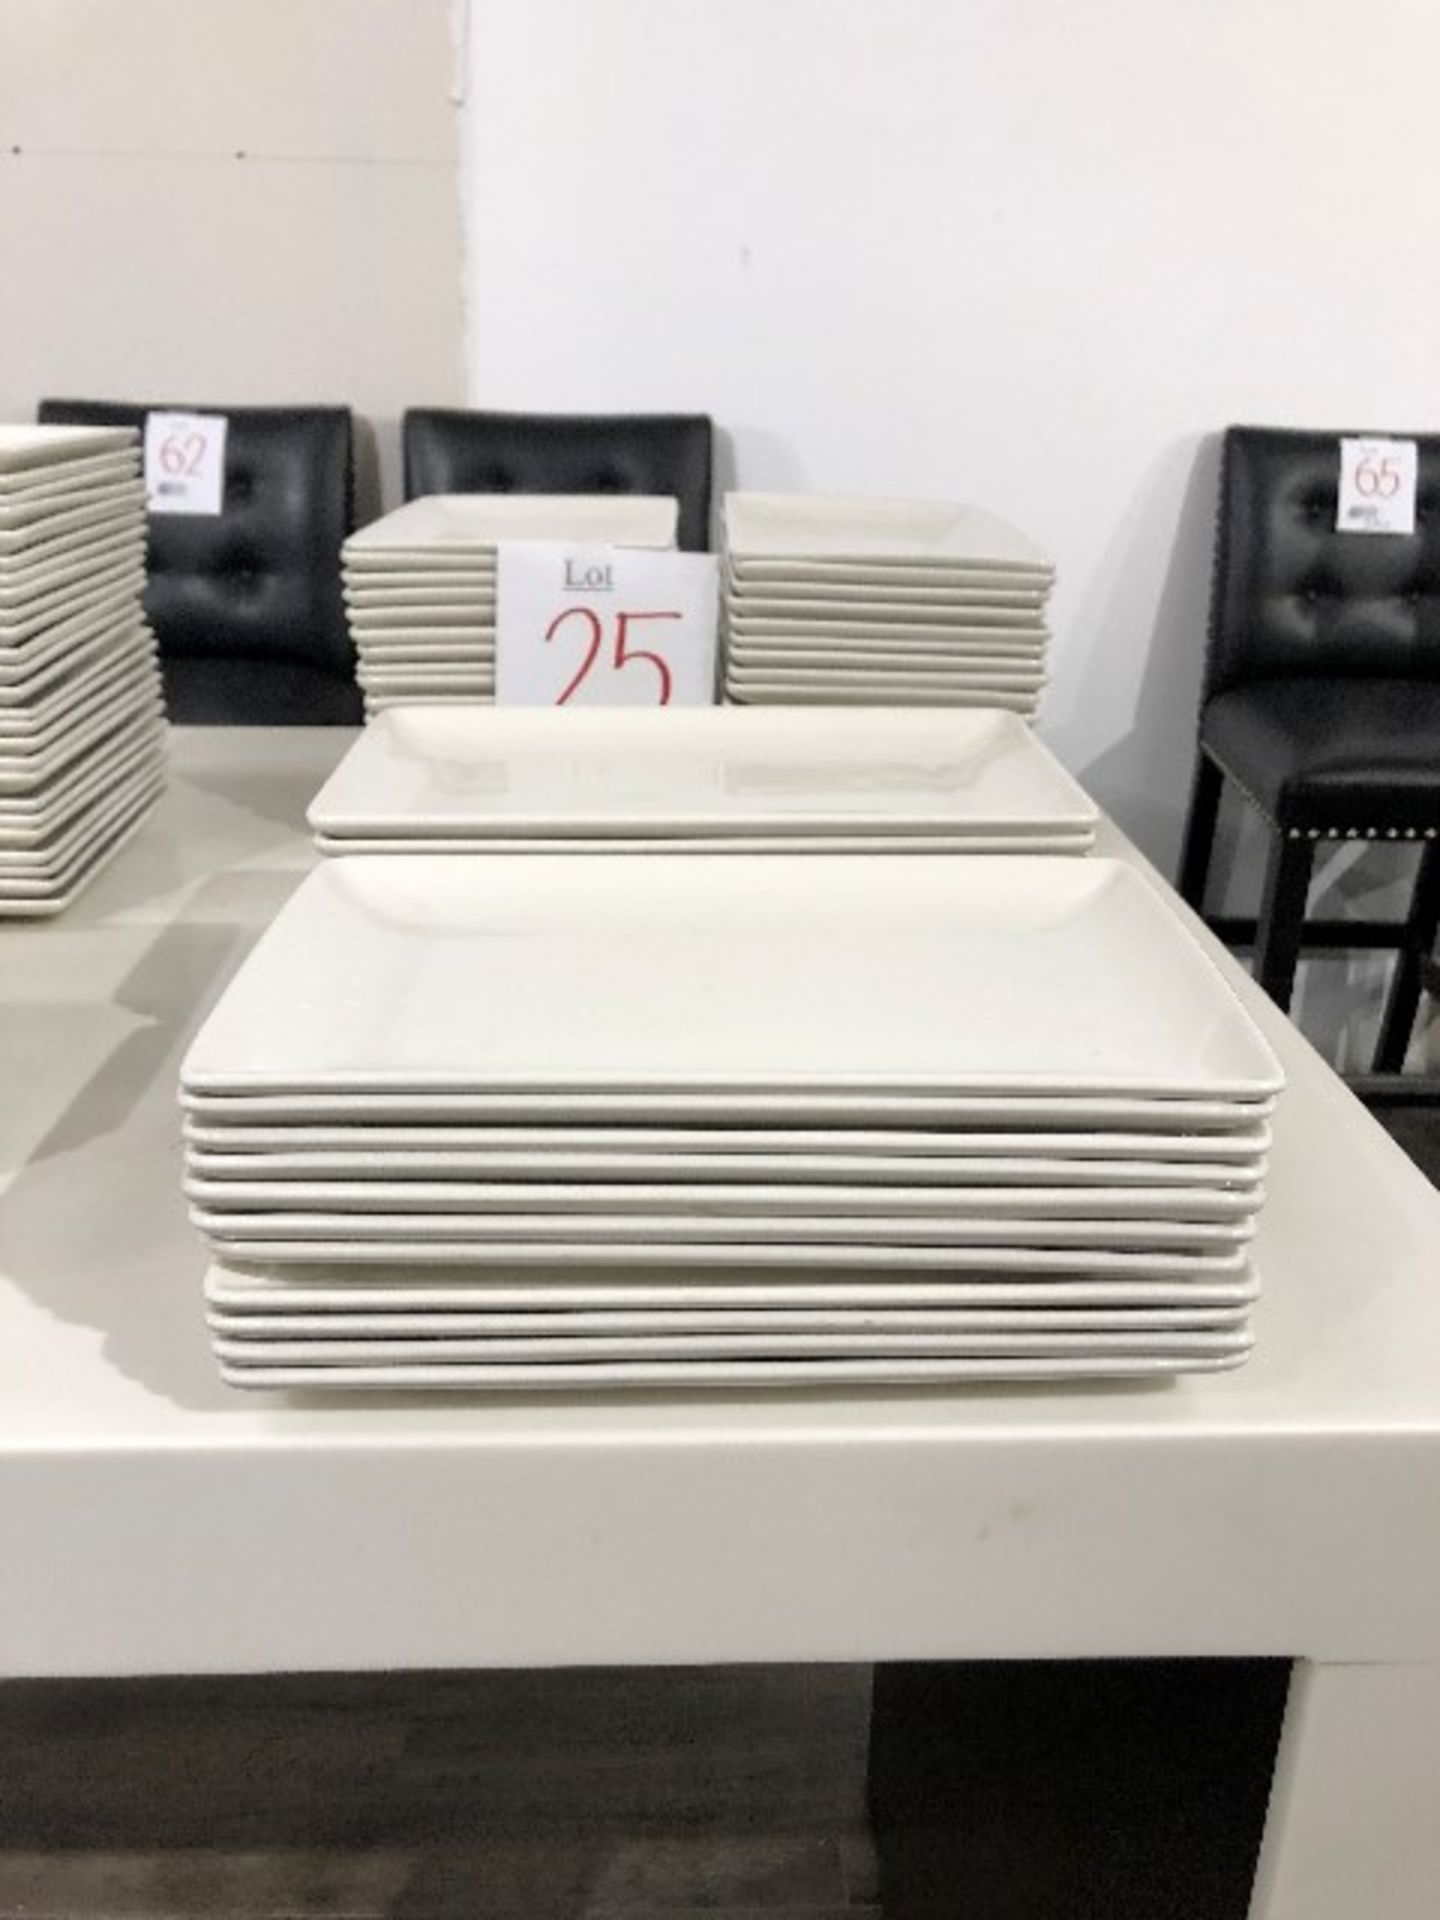 Rectangular plates, 10”x6”, 24 pcs (Lot)